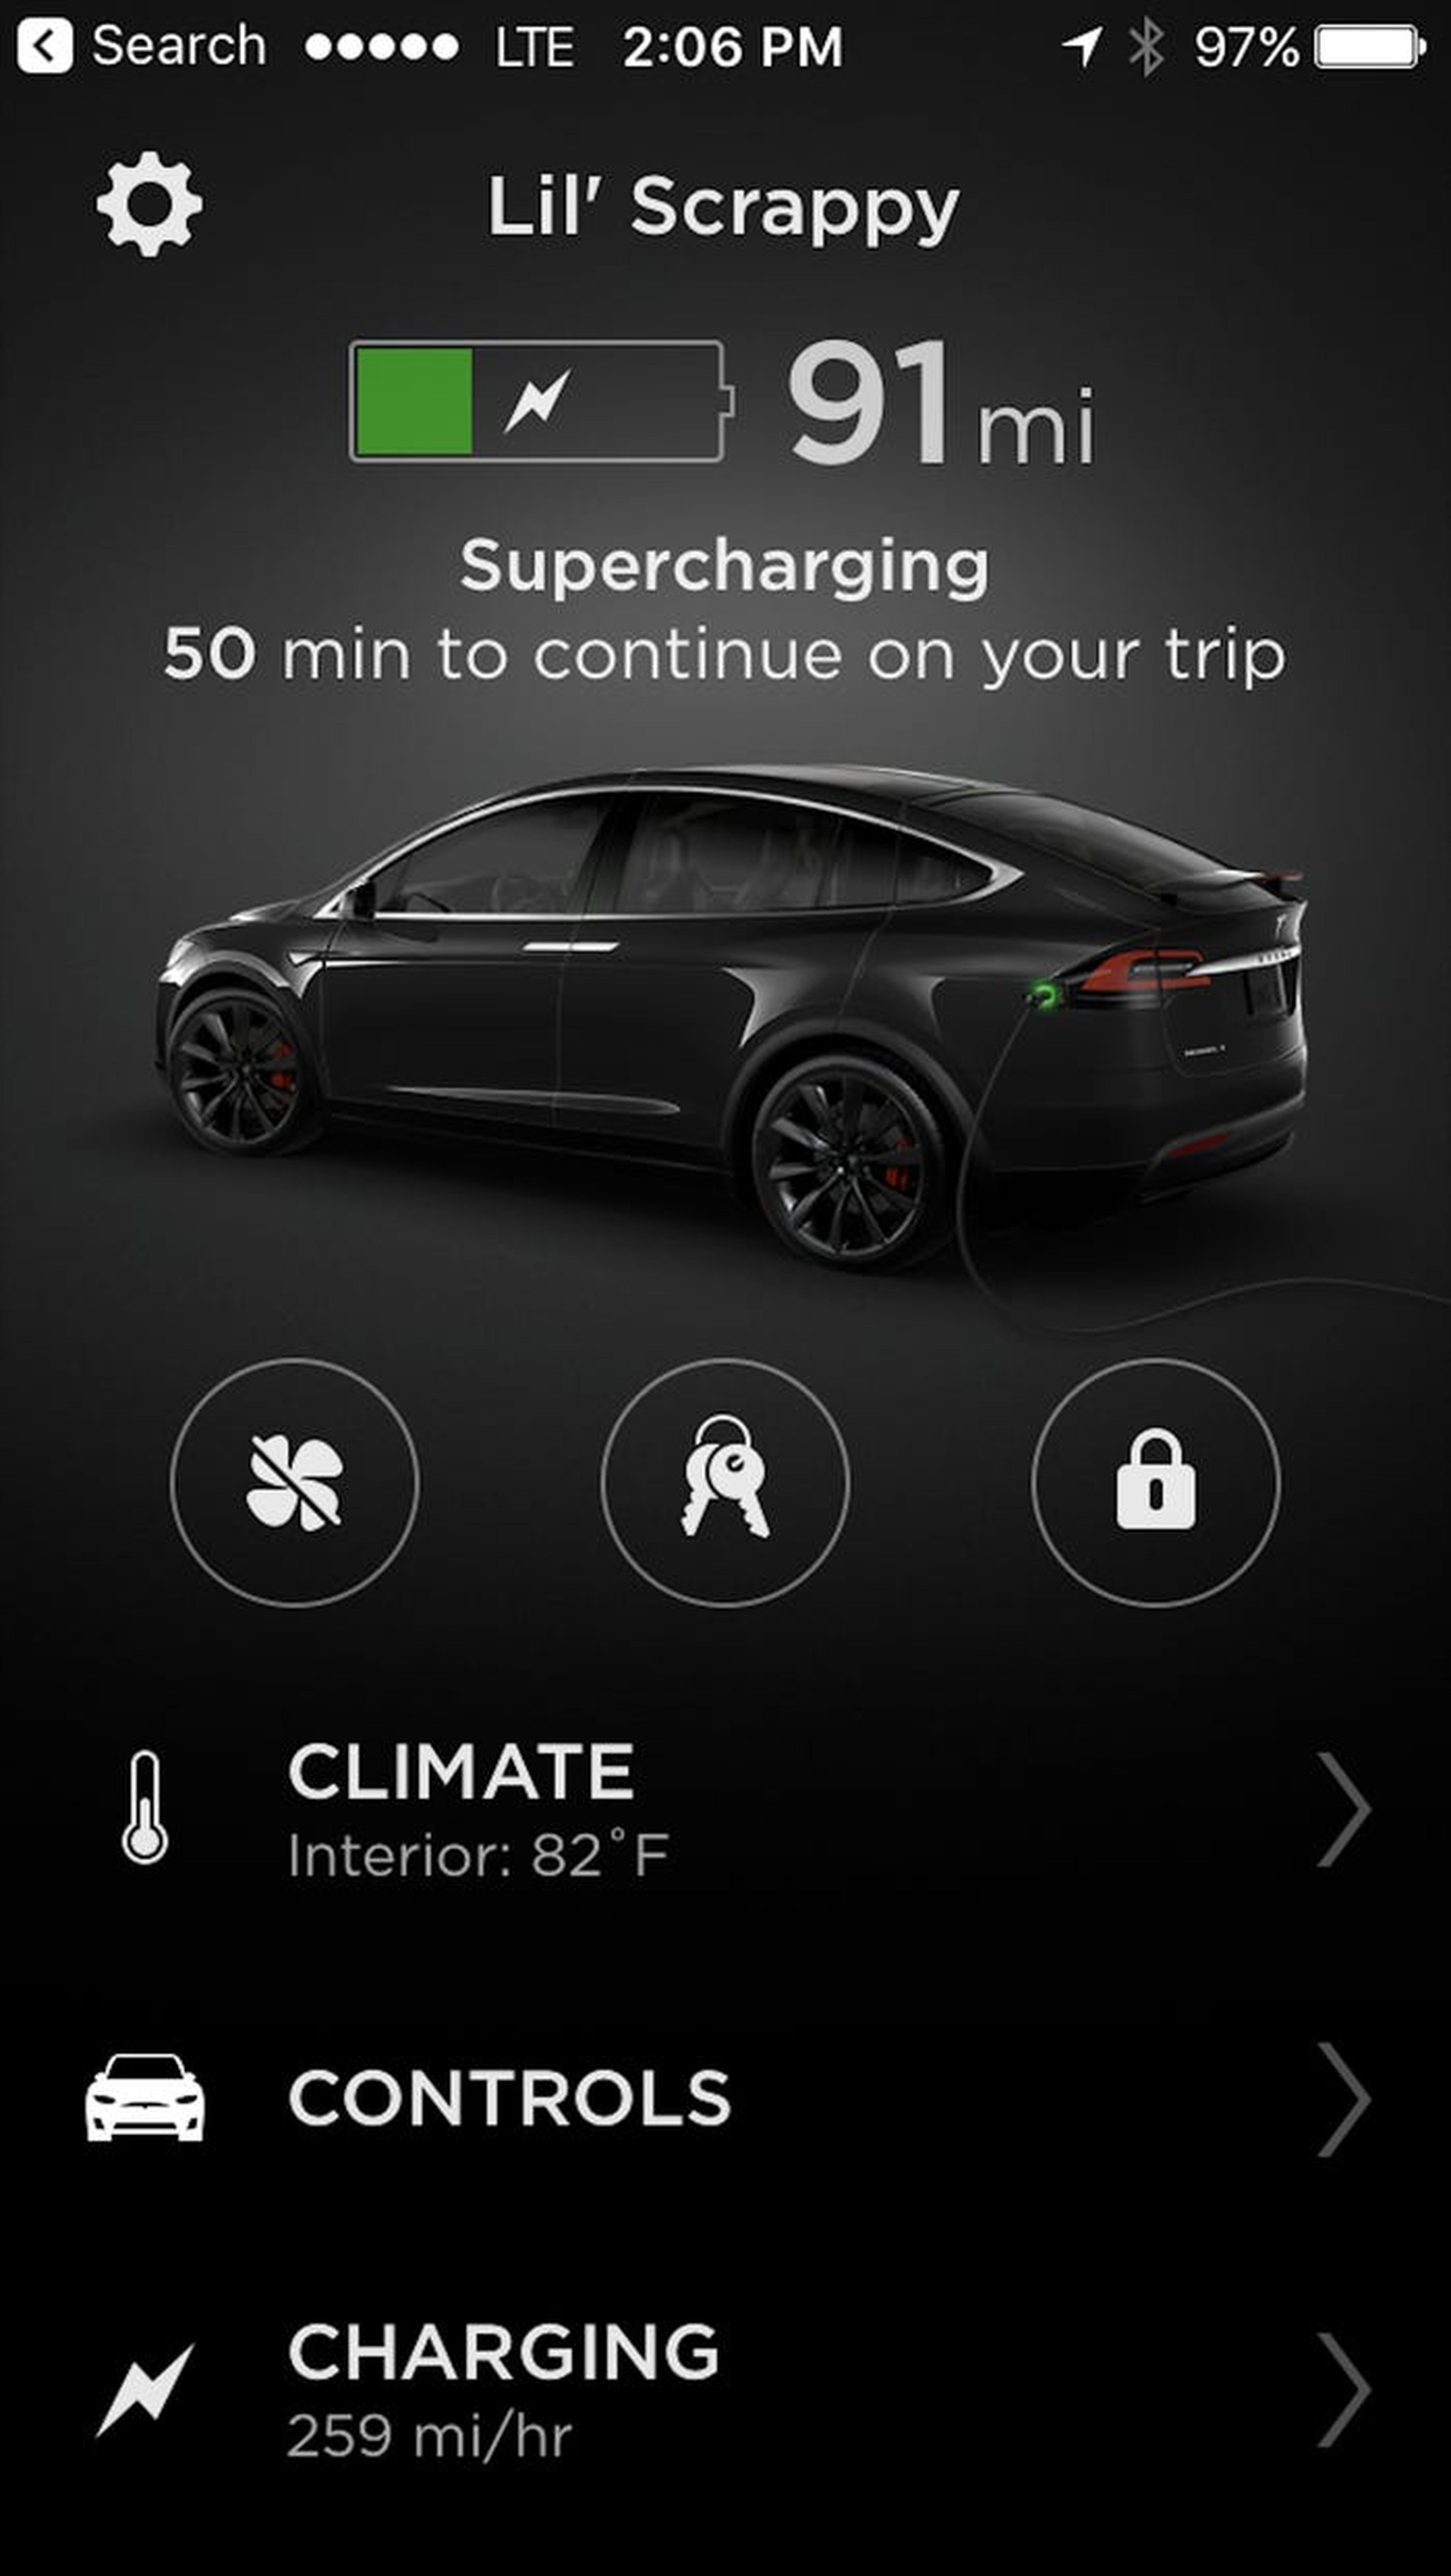 Un pantallazo del Tesla Model X desde la aplicación móvil de la compañía.